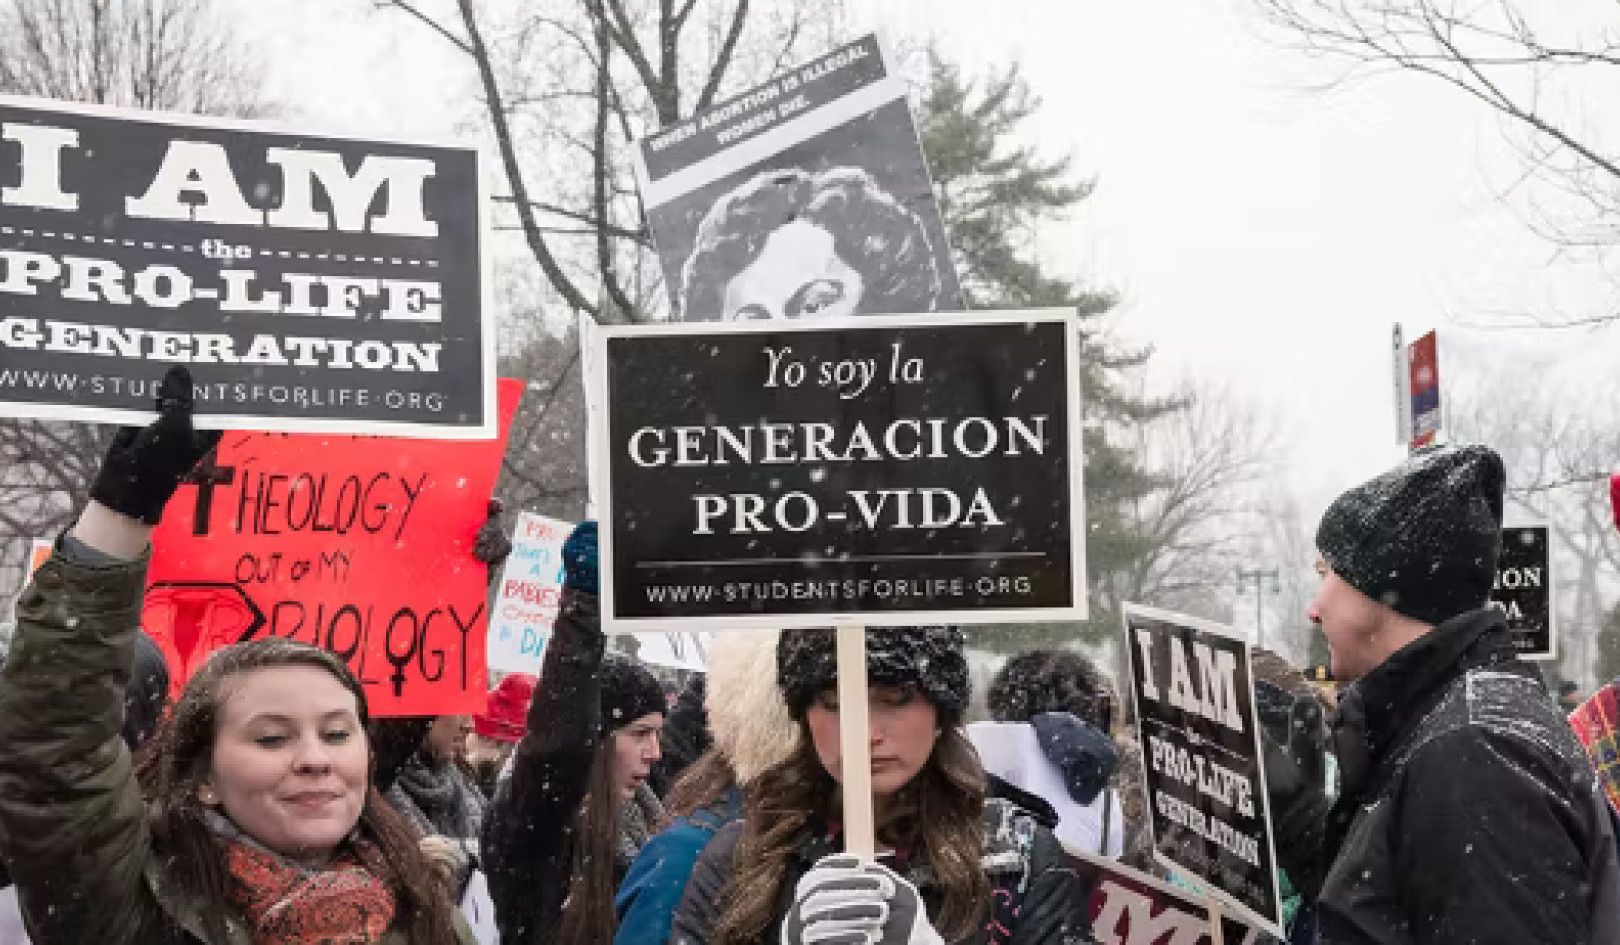 Mi hajtja valójában az abortuszellenes hiedelmeket?